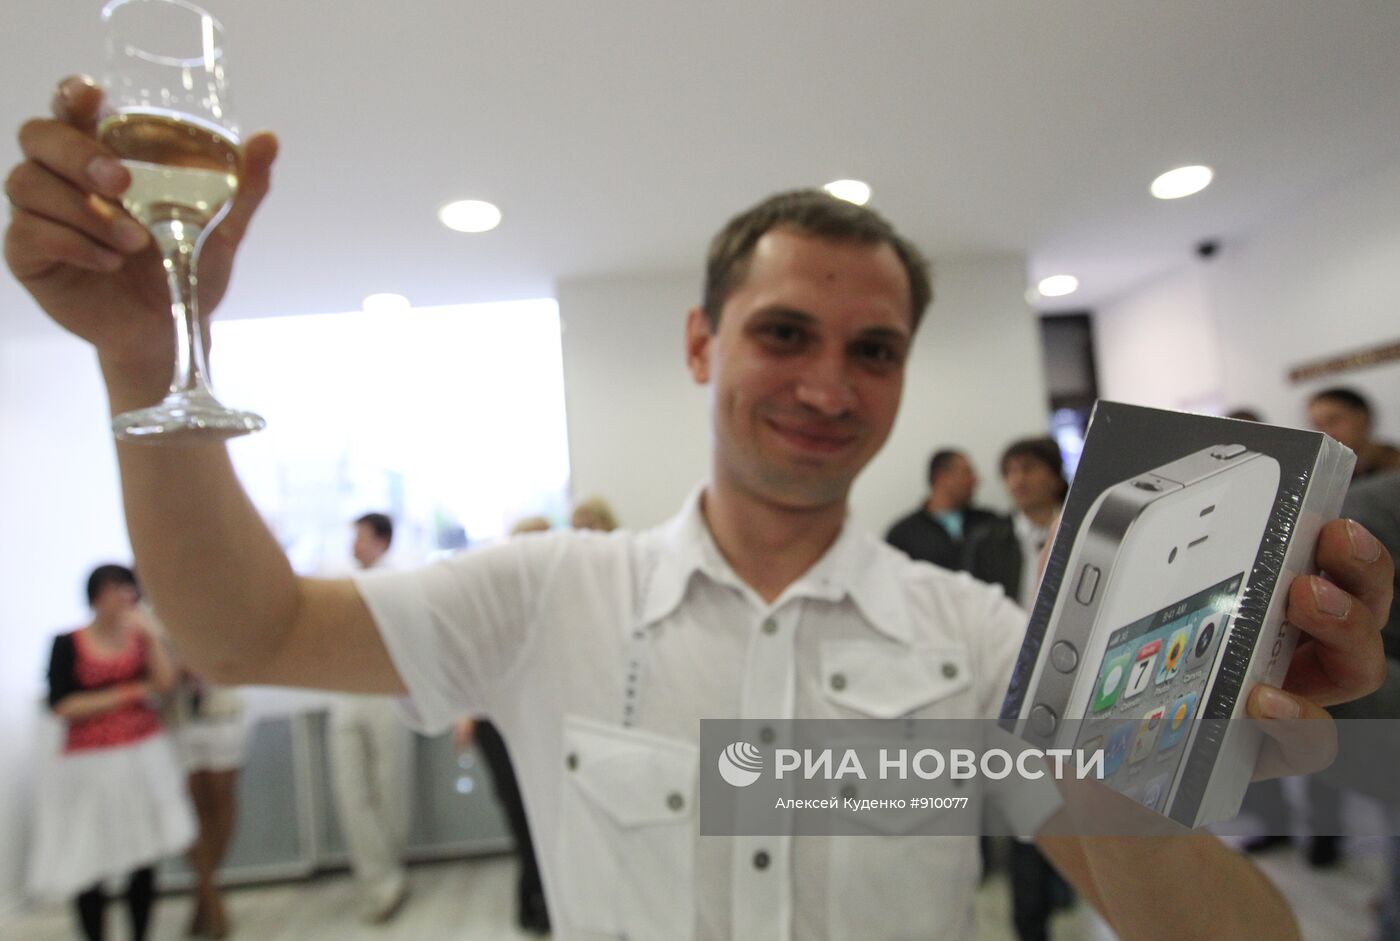 Начало продаж белой версии iPhone 4 в Москве